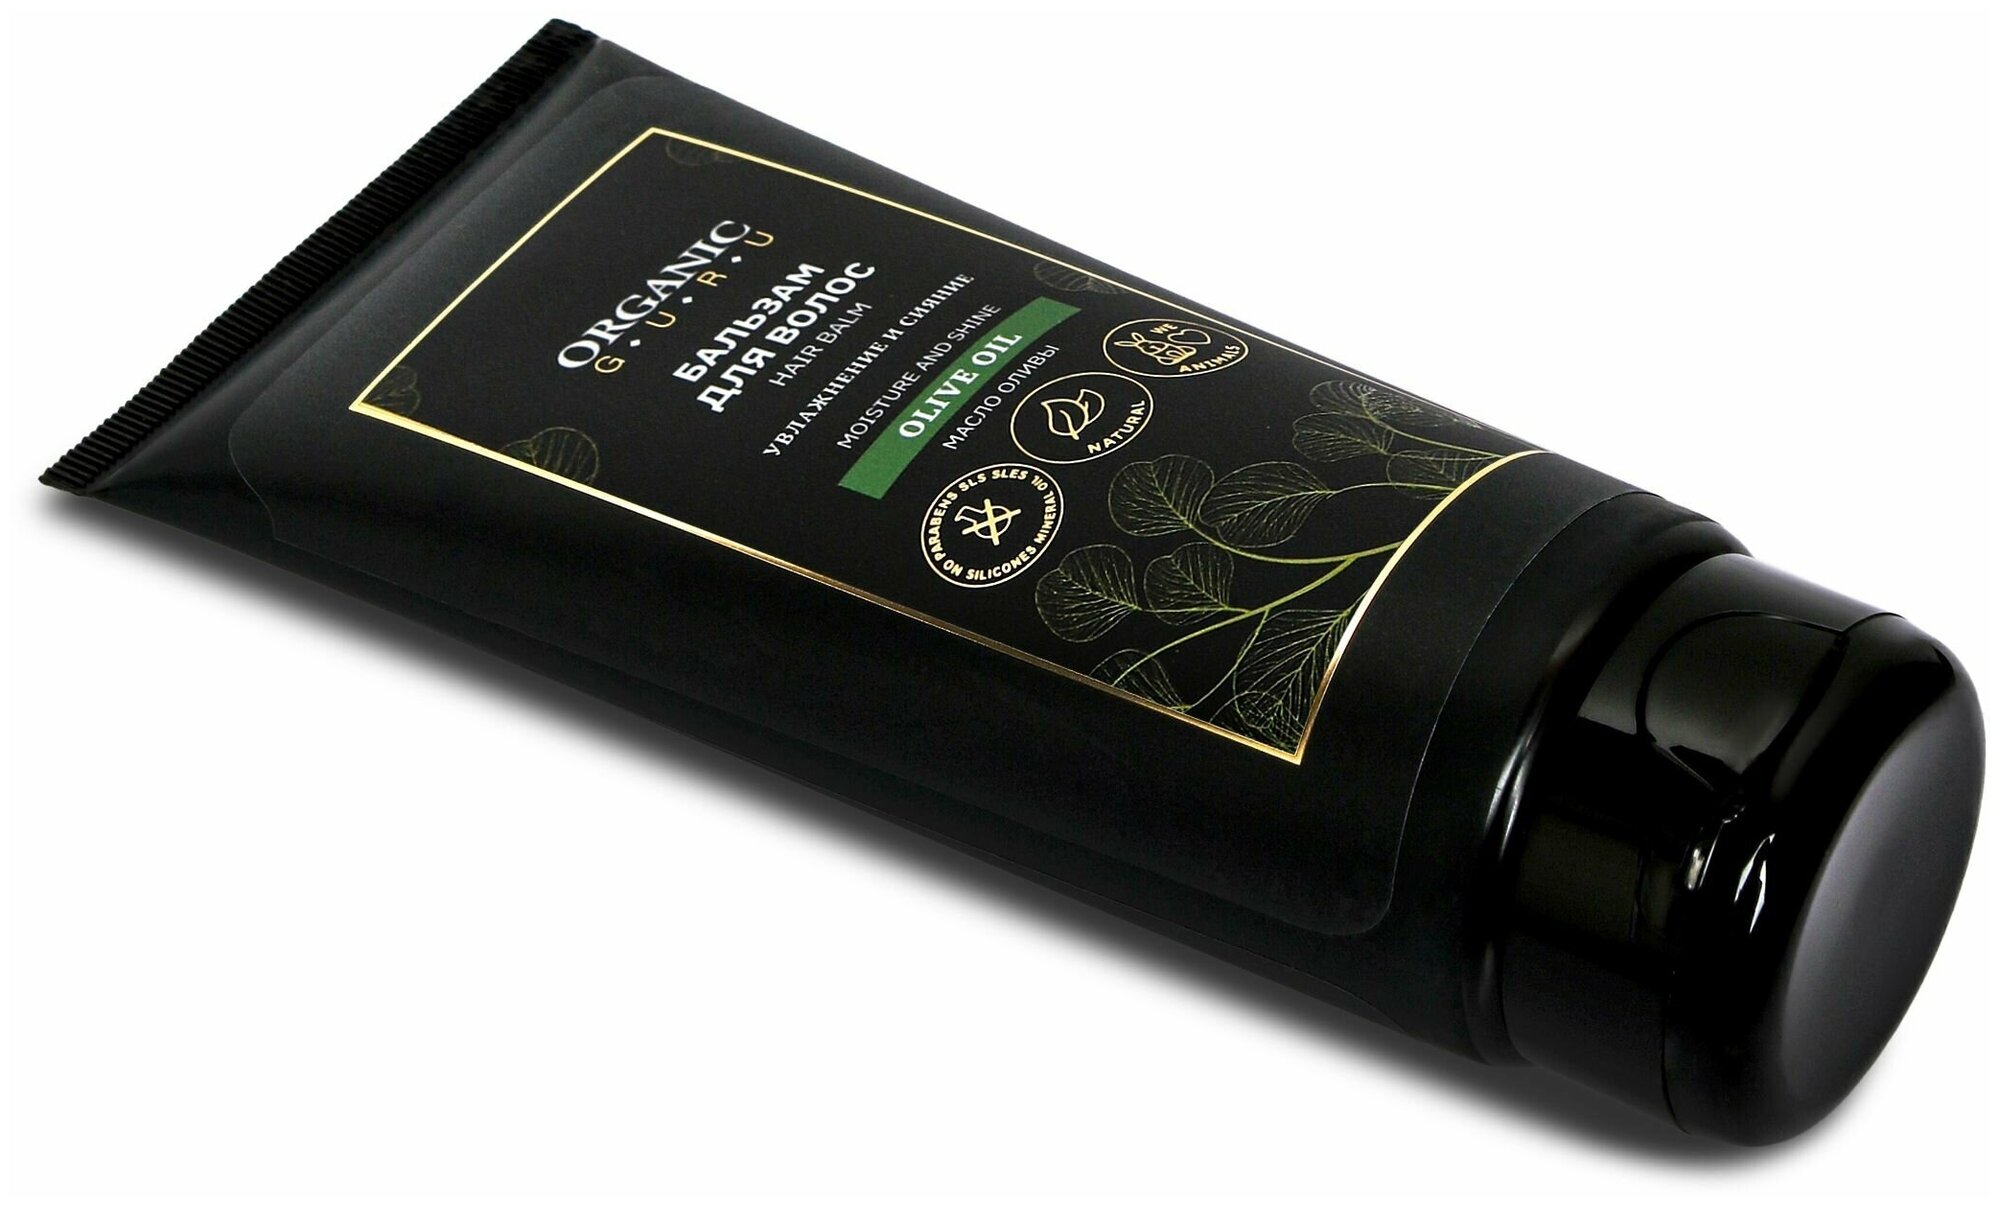 Бальзам-ополаскиватель для волос Масло Оливы Увлажнение и Сияние. 200 мл. Органик Гуру "Olive OIL"